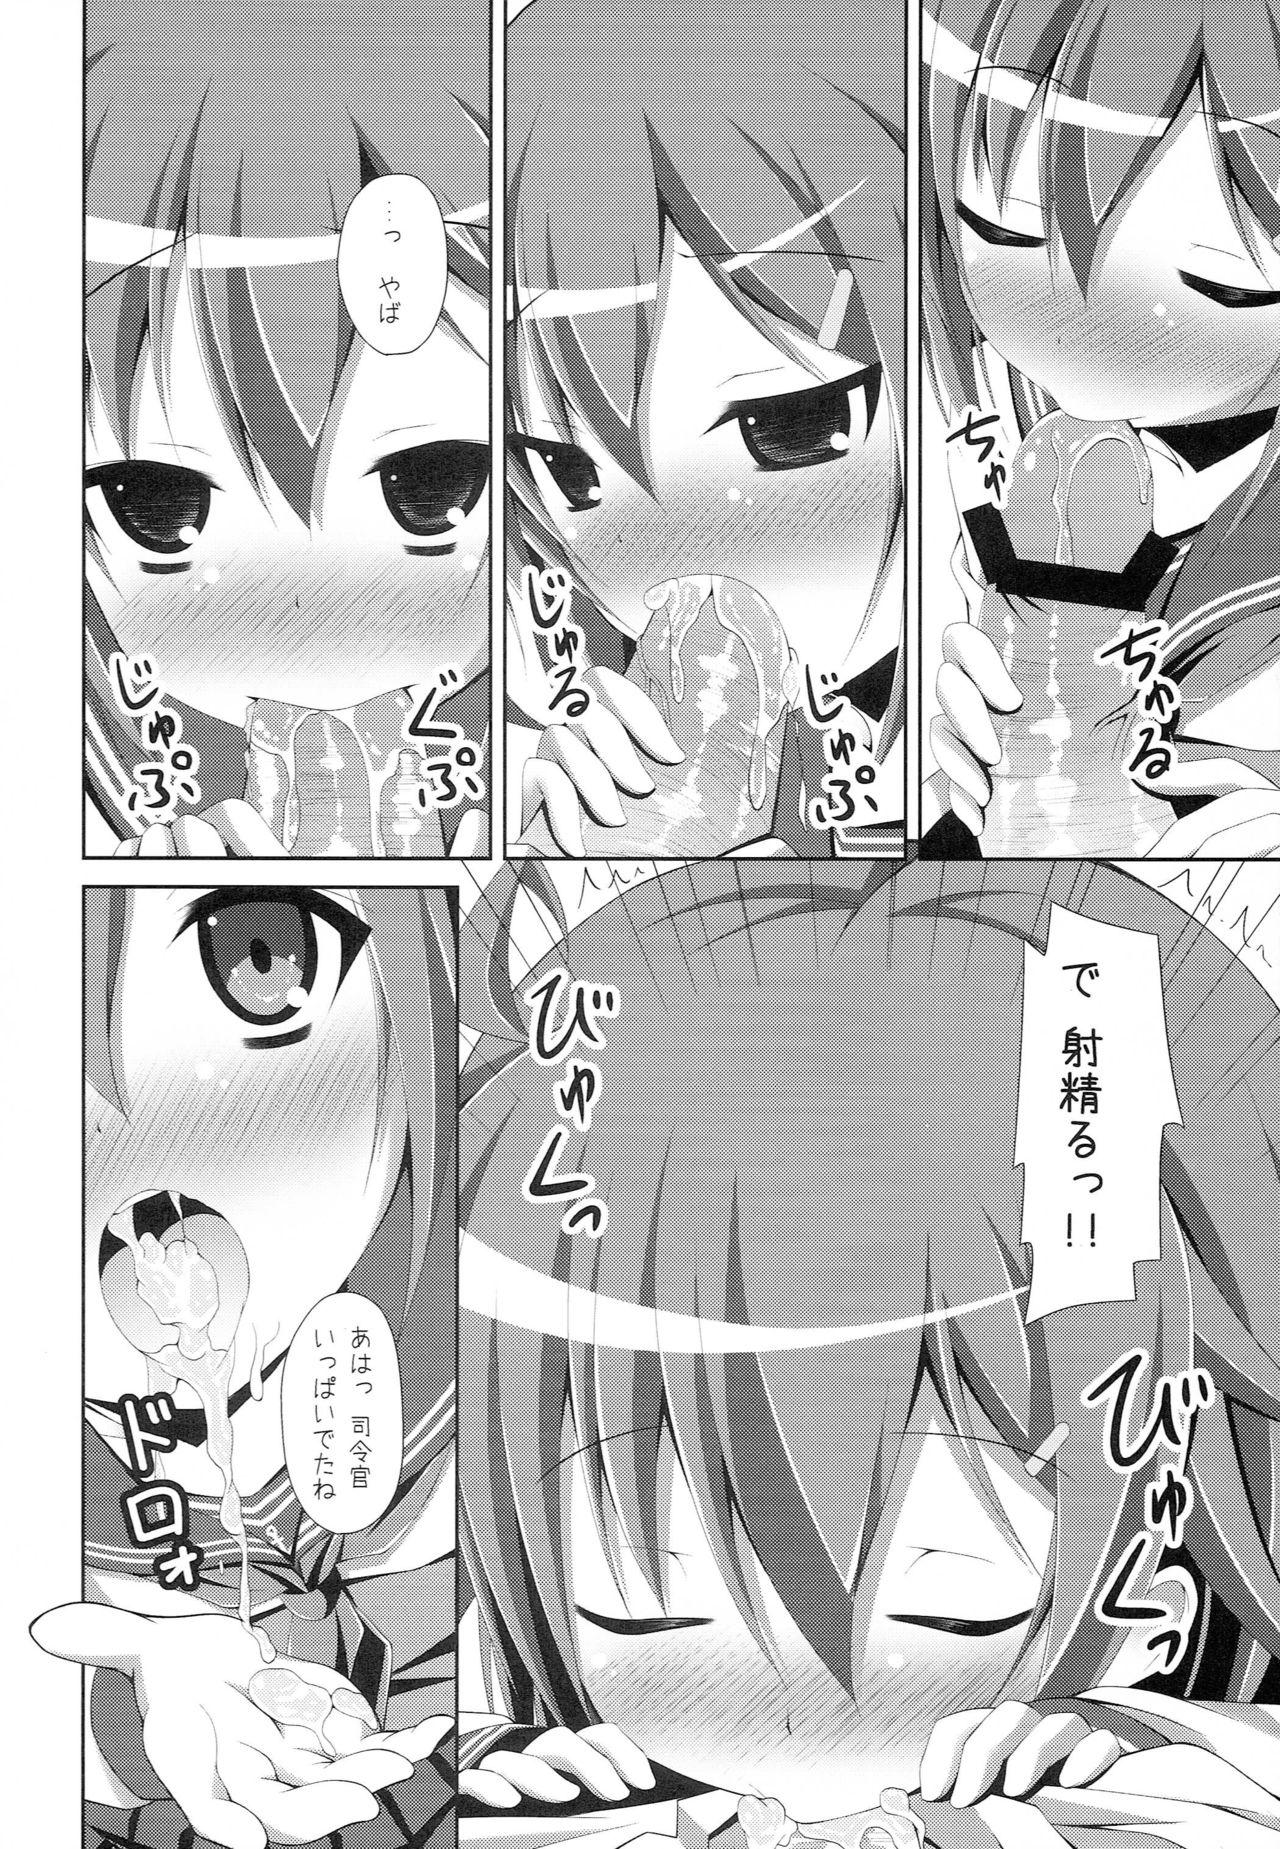 Booty "Shire-kan Ecchi Shiyo?" "Shireikan to Nara Watashi mo..." - Kantai collection Face - Page 7